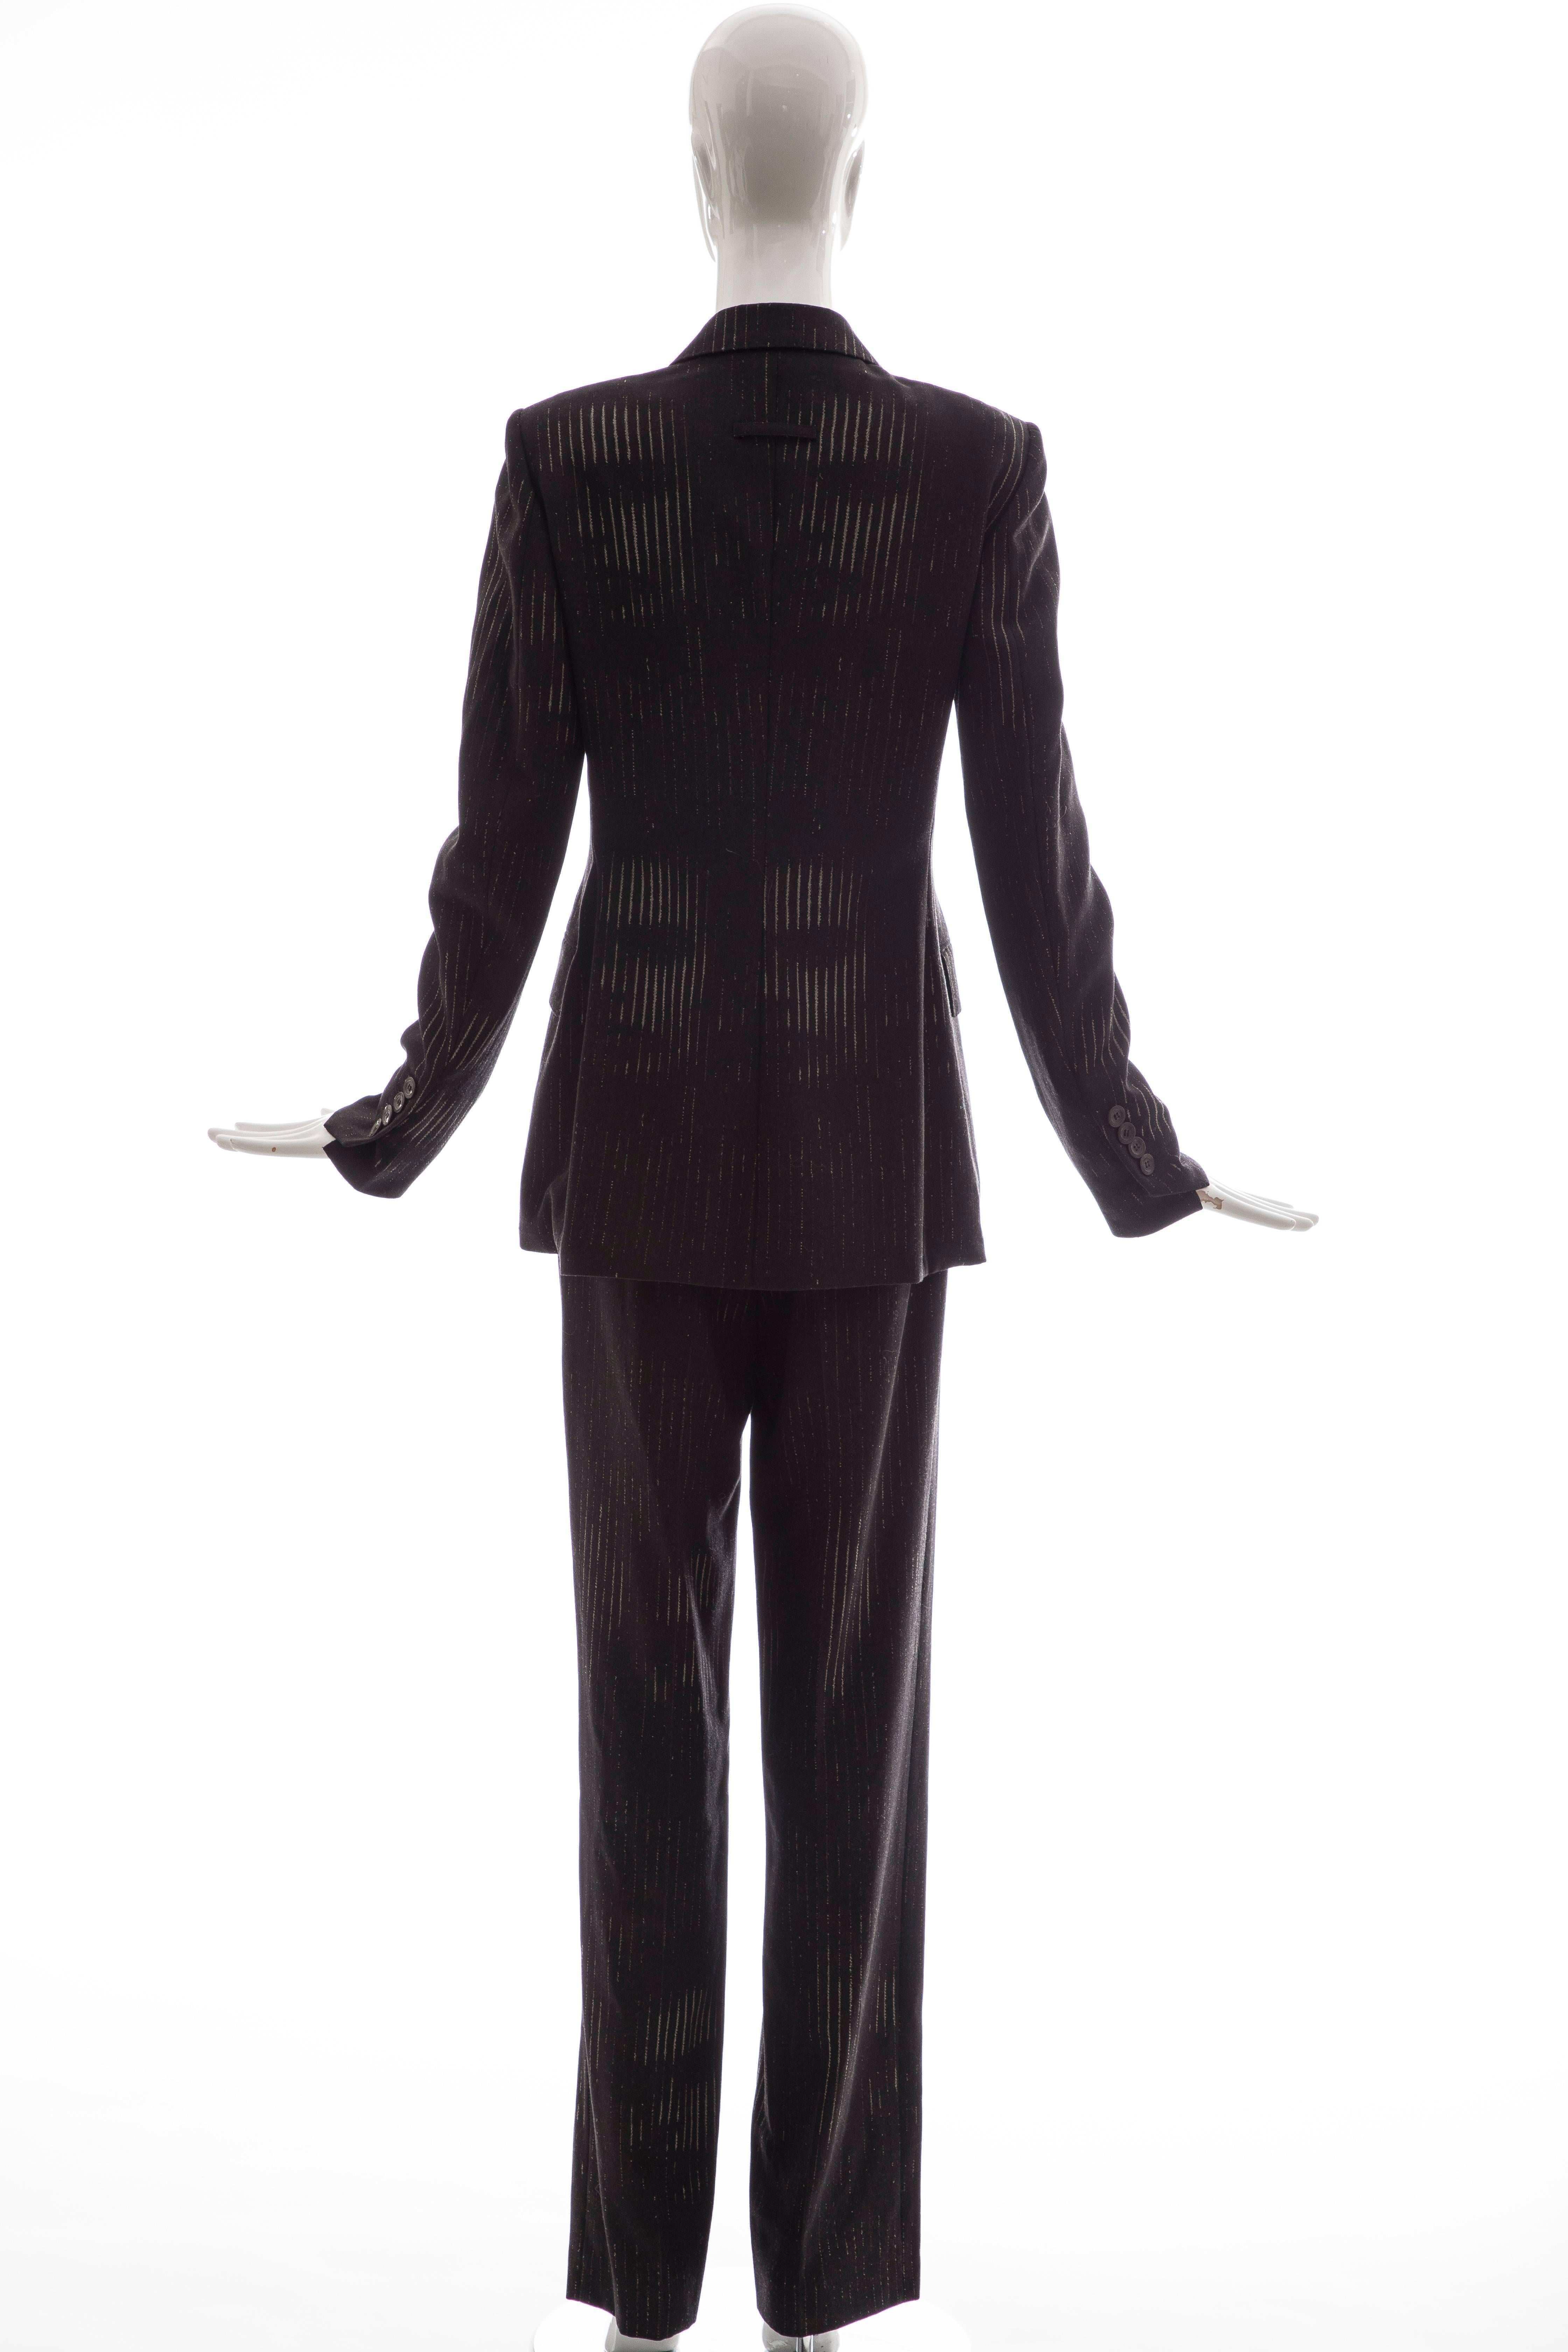 Black Jean Paul Gaultier 3D Printed Faces Wool Grey Pinstripe Pantsuit, Circa 1990's